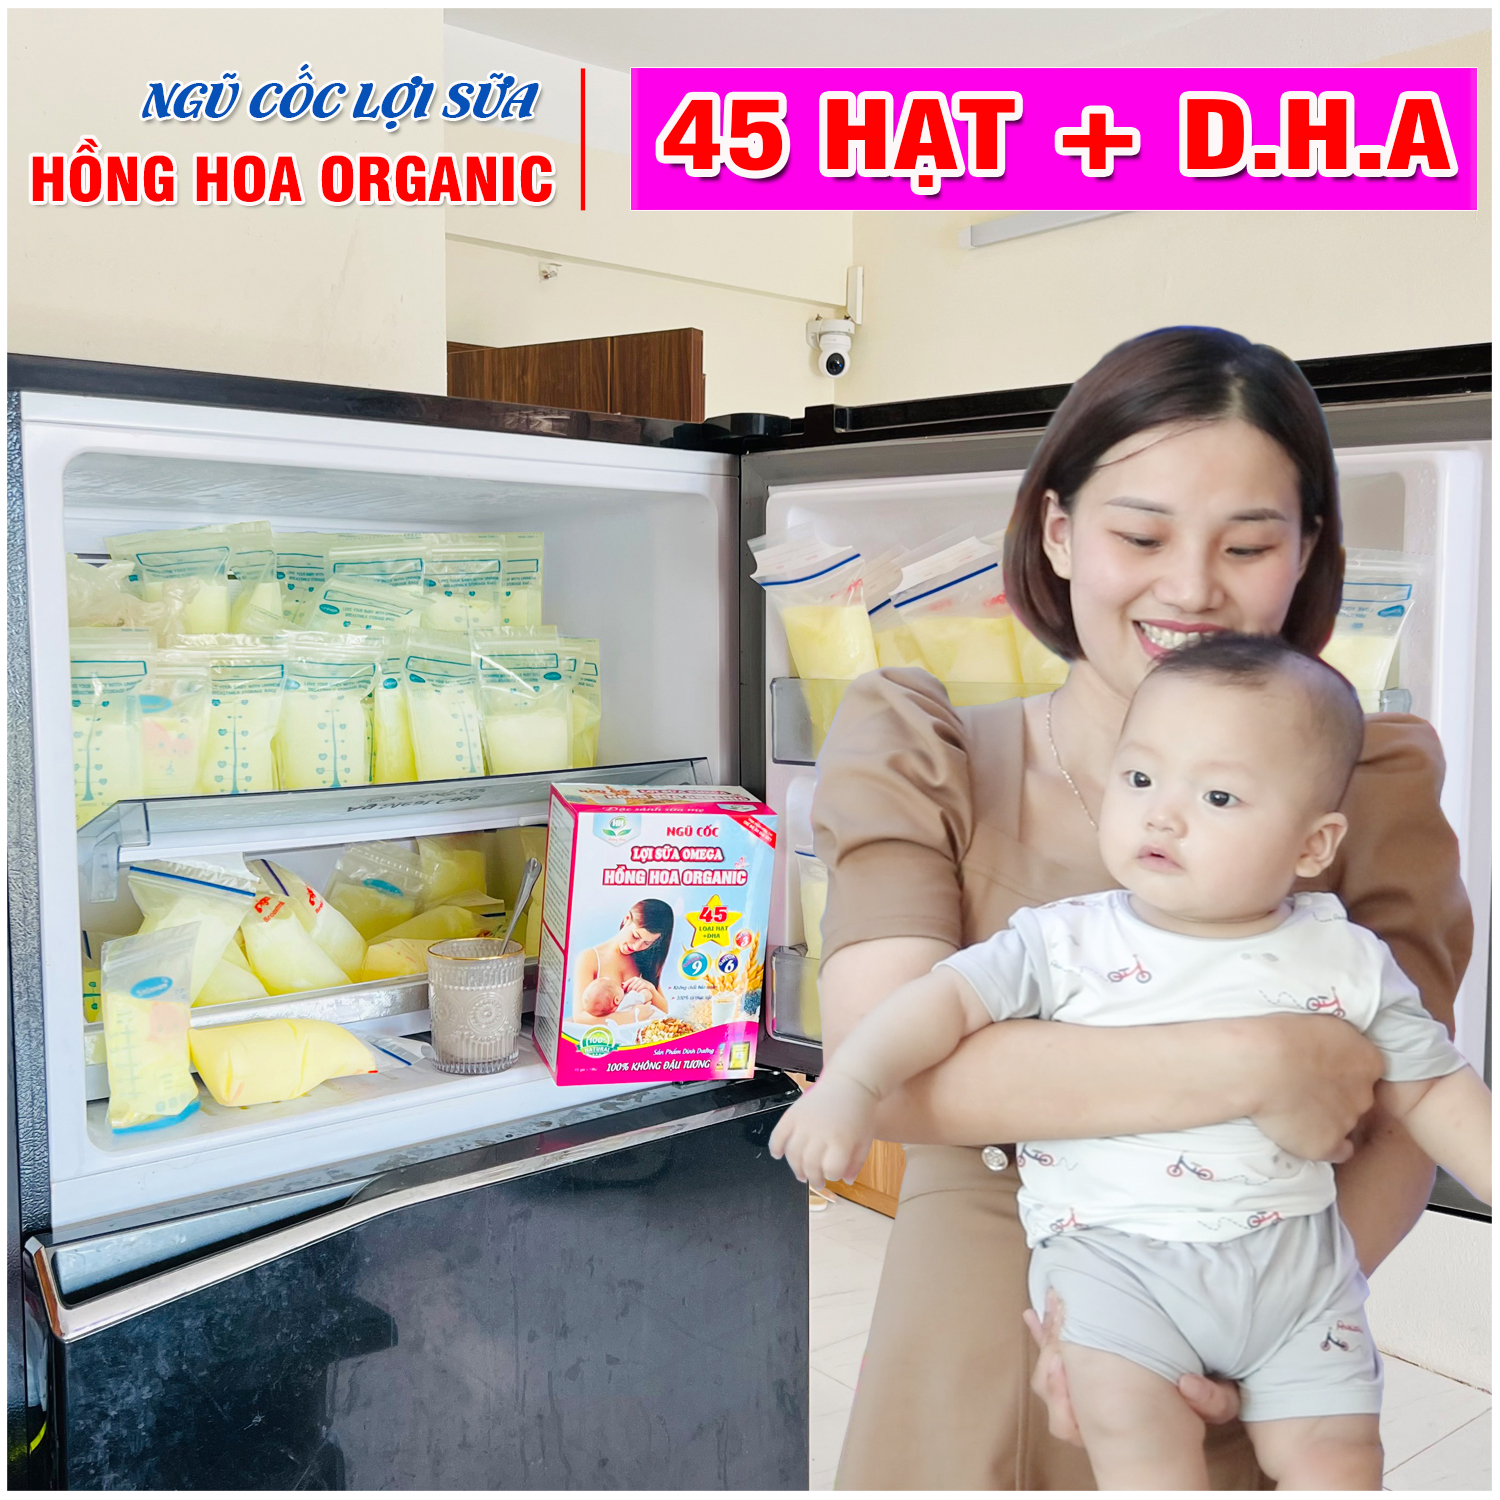 Ngũ Cốc Lợi Sữa 45 Hạt Hồng Hoa Organic Gọi Sữa Siêu Nhanh